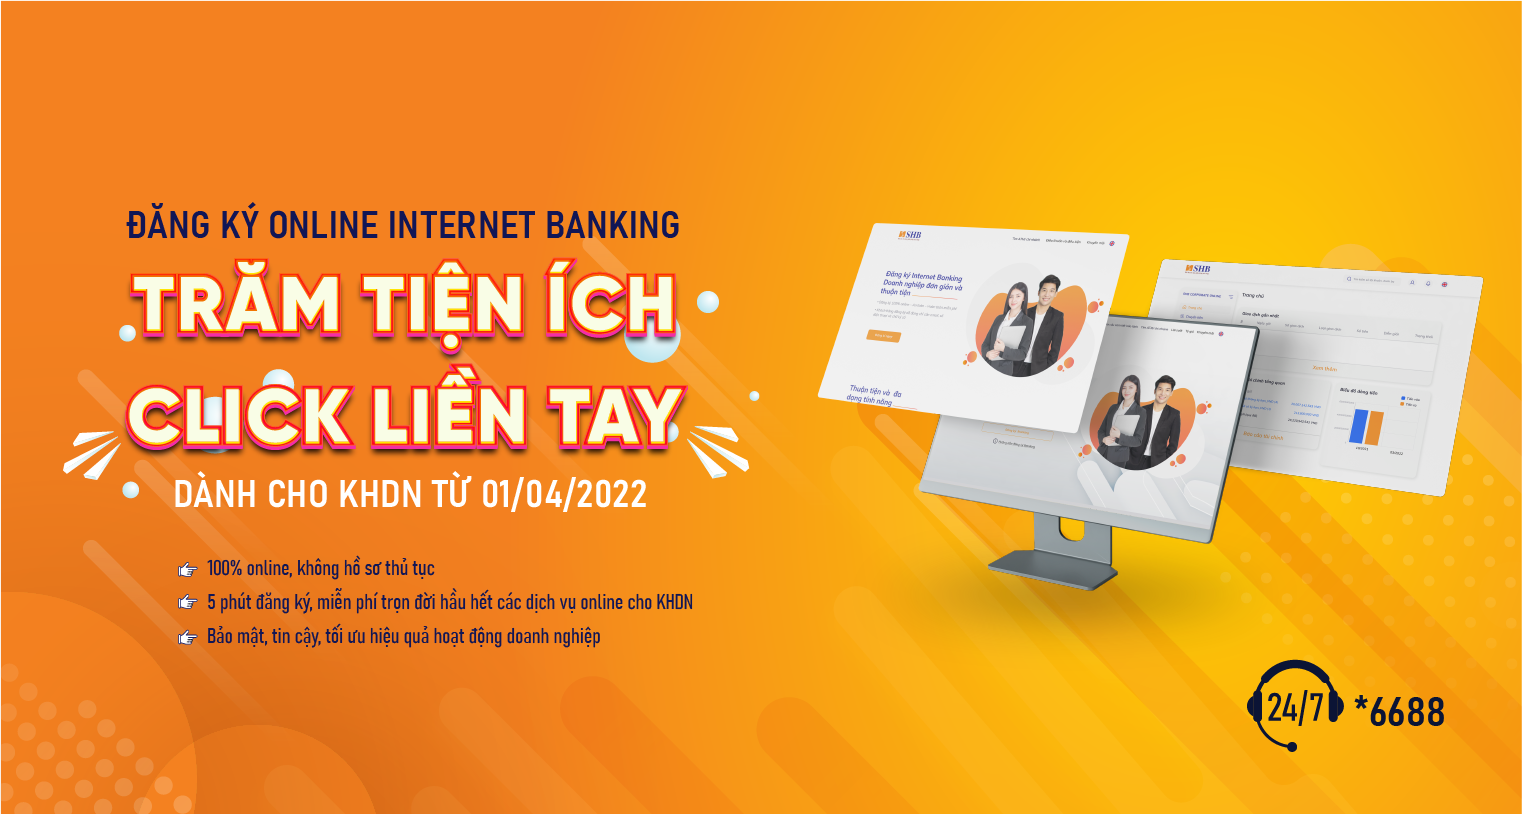 SHB miễn phí cho khách hàng doanh nghiệp đăng ký Internet Banking trực tuyến - Ngân hàng SHB